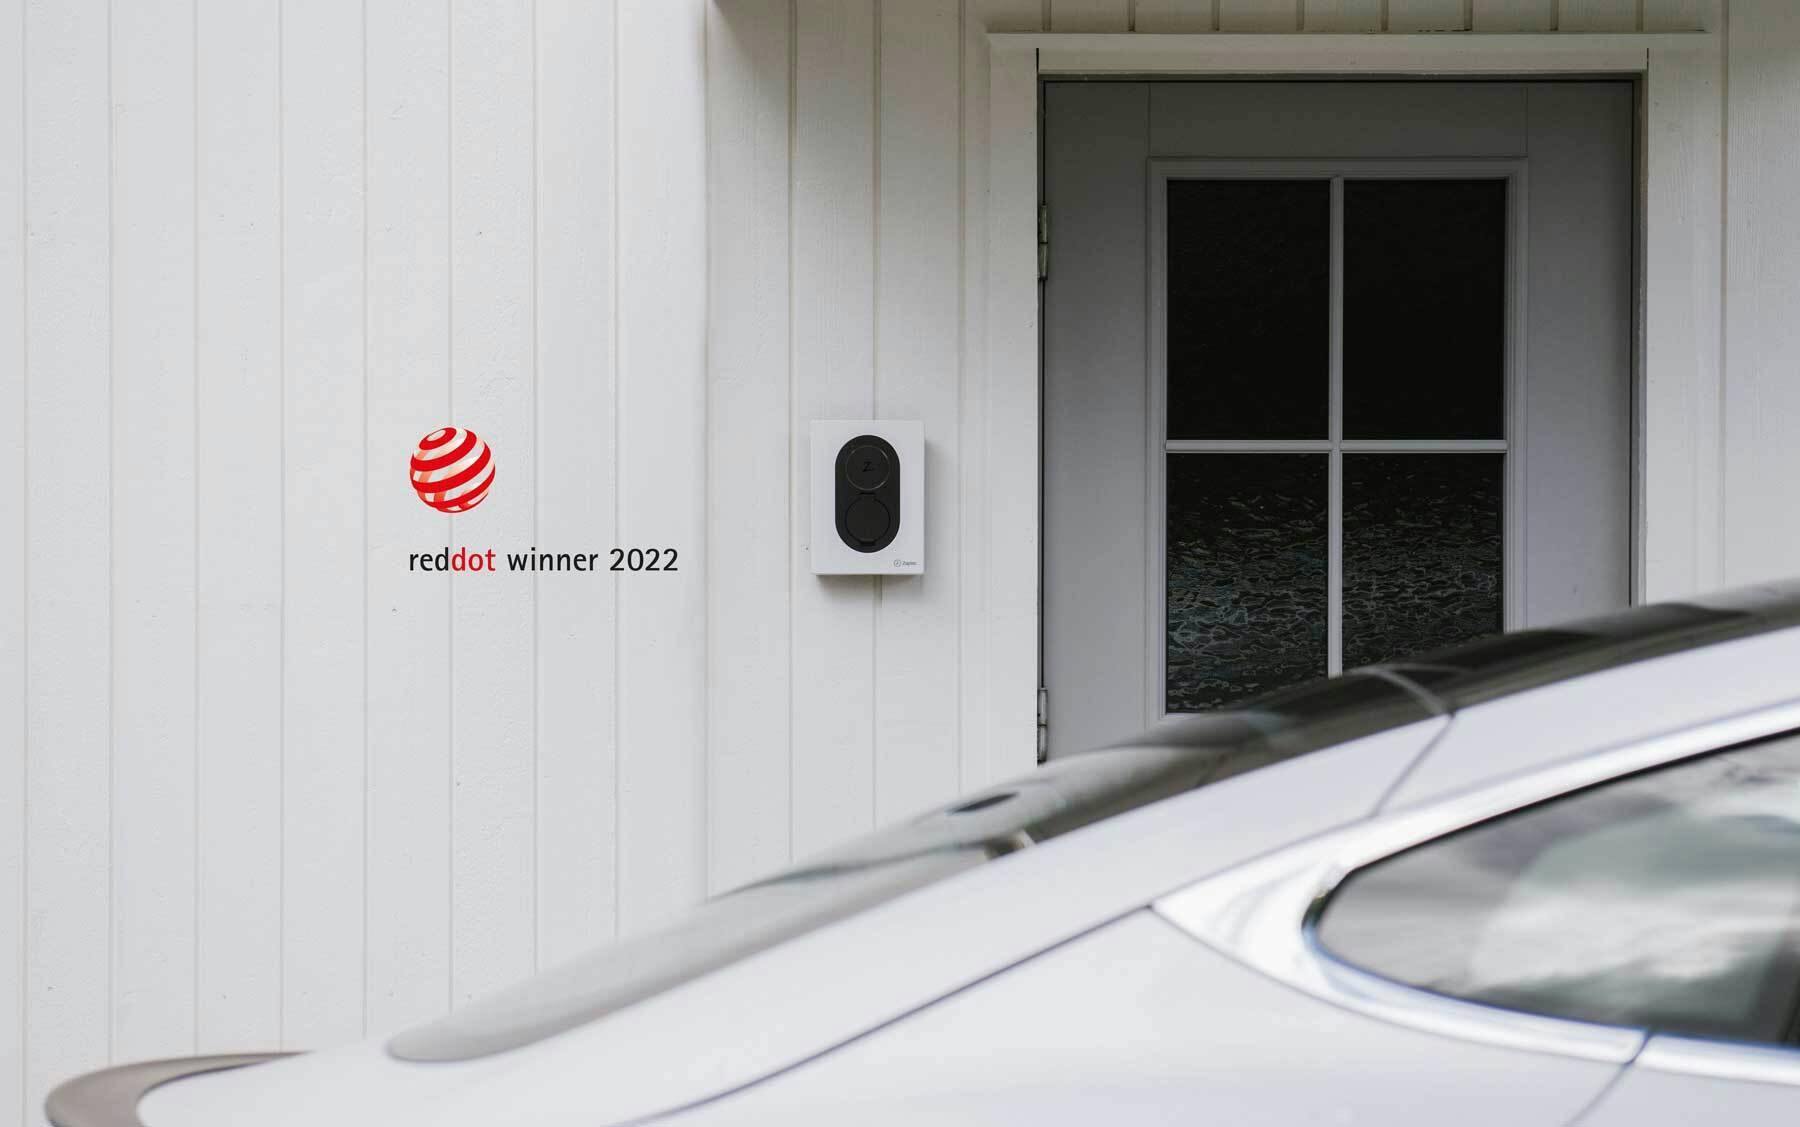 En vit Zaptec Go laddare sitter monterad på en vit träfasad bredvid en ljust grå dörr med mörka fönster, i förgrunden ser man delar av taket på en vit bil. I ena hörnet är loggan för reddot